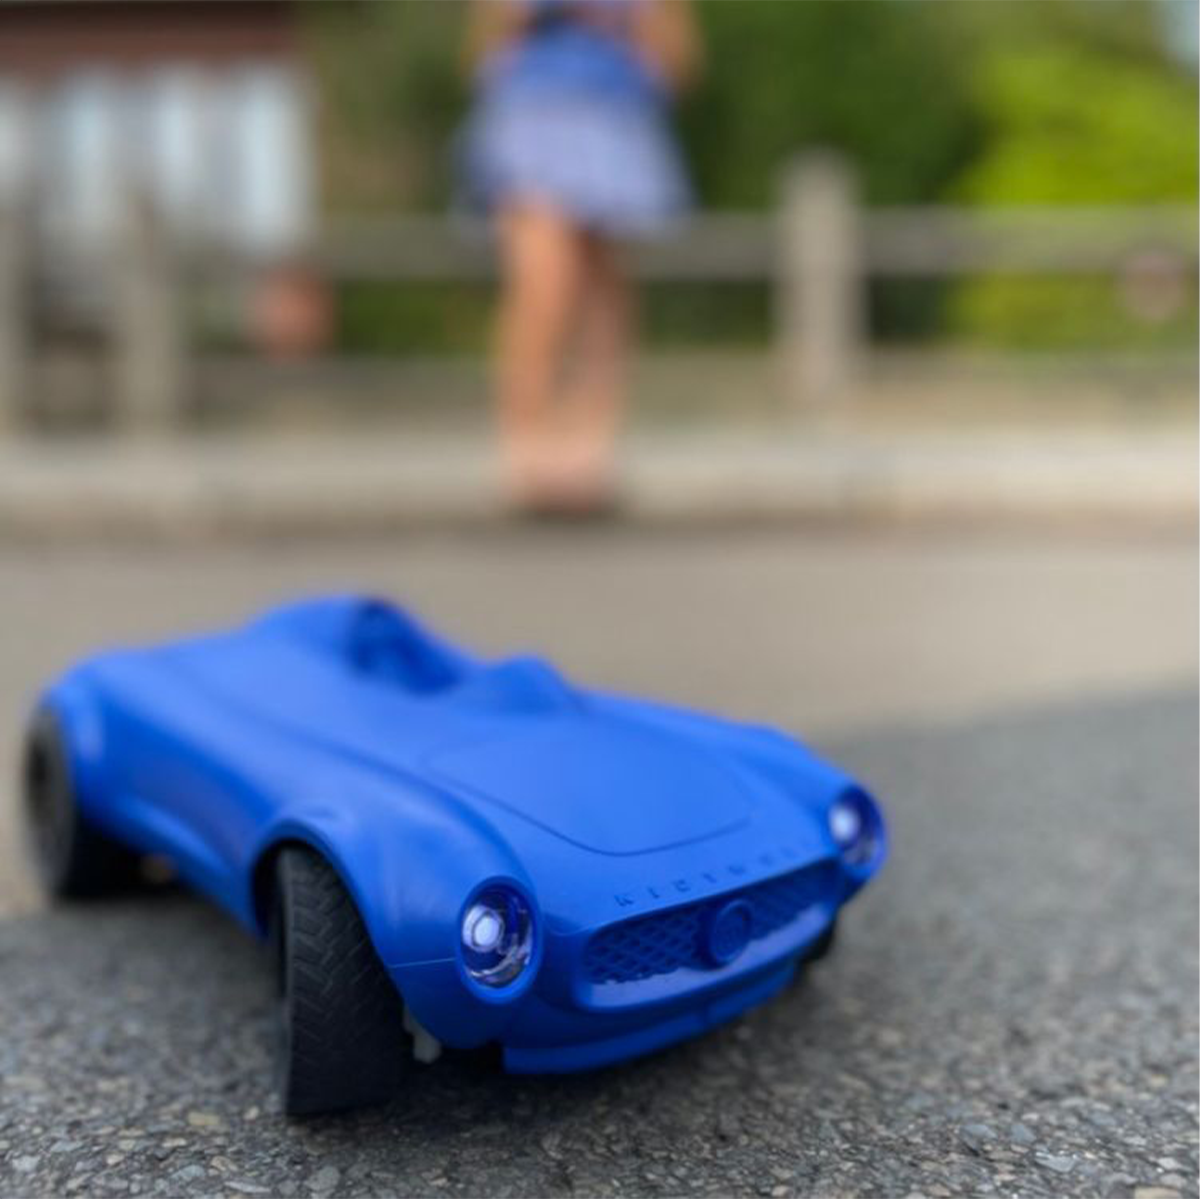 Is jouw kleintje gek op auto's? Dan is deze Kidycar afstandbestuurbare auto in de kleur blauw van Kidywolf echt iets voor jouw kleine spruit. Deze stoere auto kan namelijk op afstand bestuurd worden met de afstandsbediening. Hoe cool is dat?! VanZus